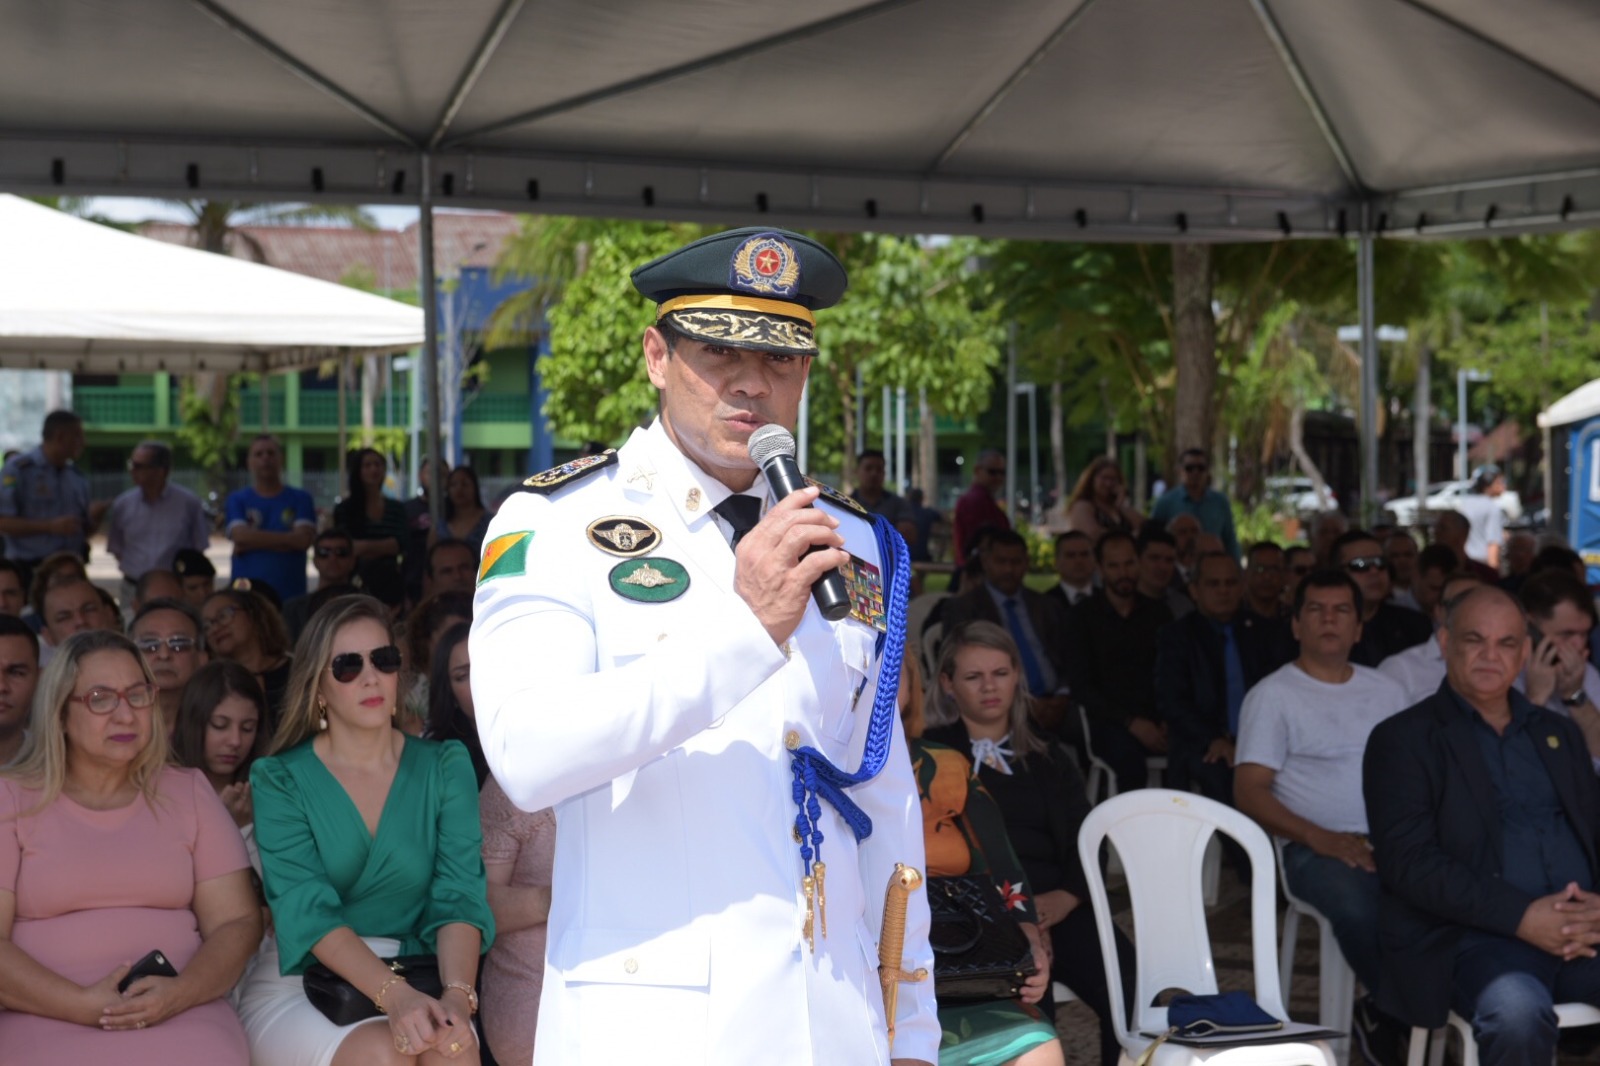 Polícia Militar acreana orgulha todo Estado”, enfatiza deputado coronel Ulysses